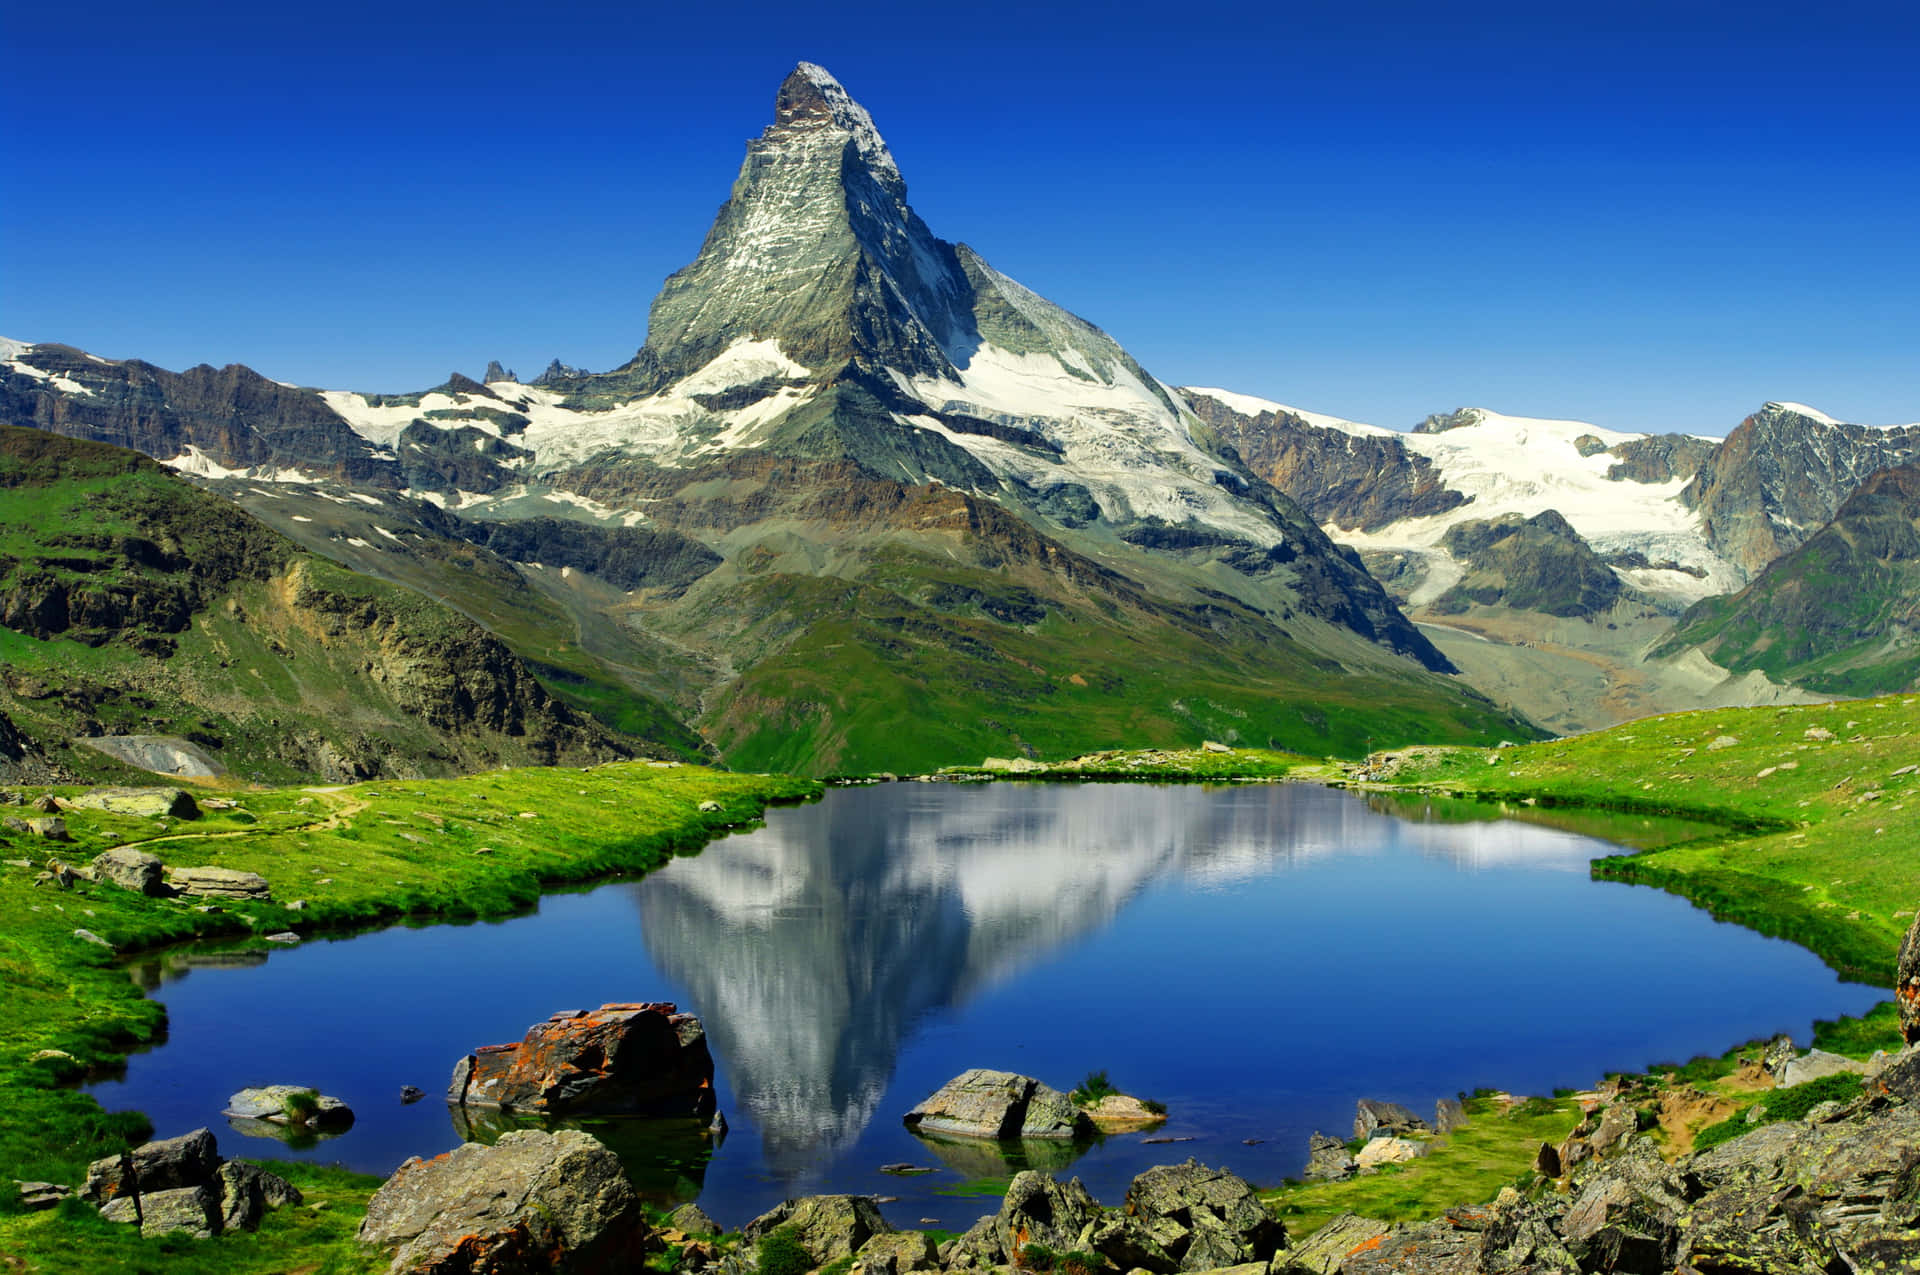 Reflektionav Matterhorn På Sjön. Wallpaper